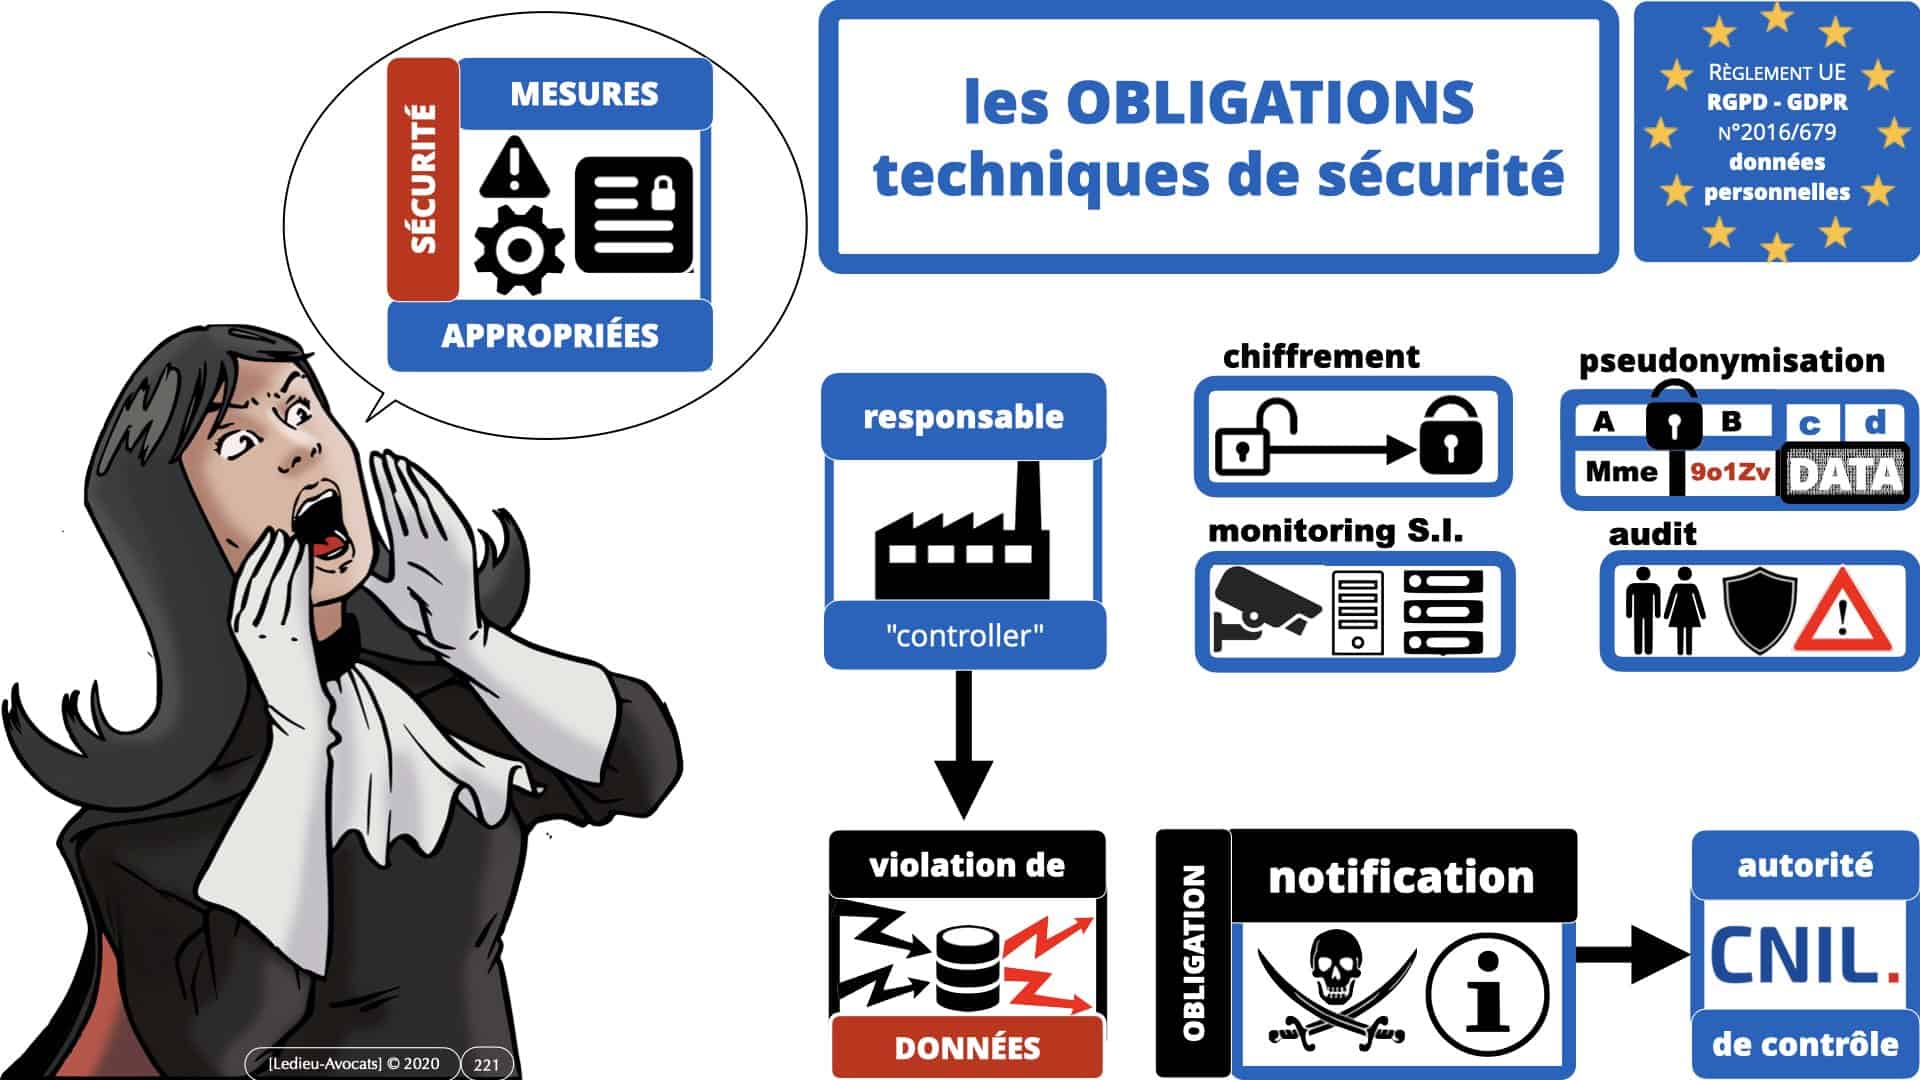 RGPD e-Privacy données personnelles jurisprudence formation Lamy Les Echos 10-02-2021 ©Ledieu-Avocats.221